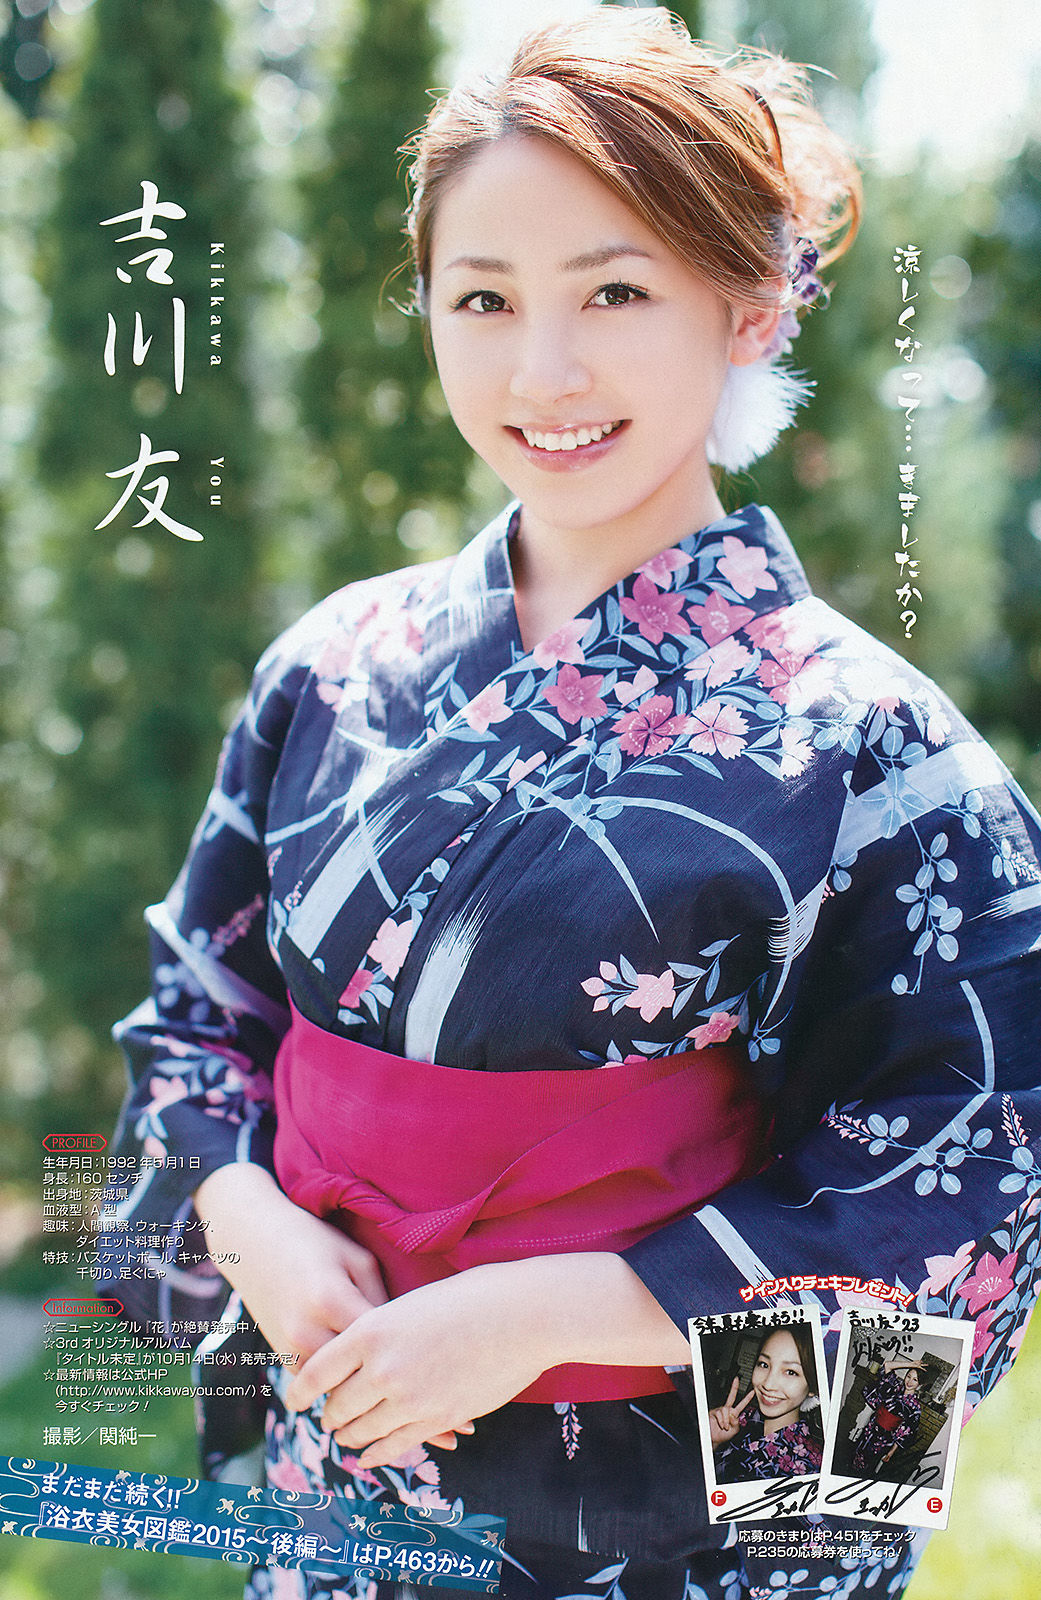 [Young Gangan] No.17 Photo Magazine in 2015 Page 12 No.54c706